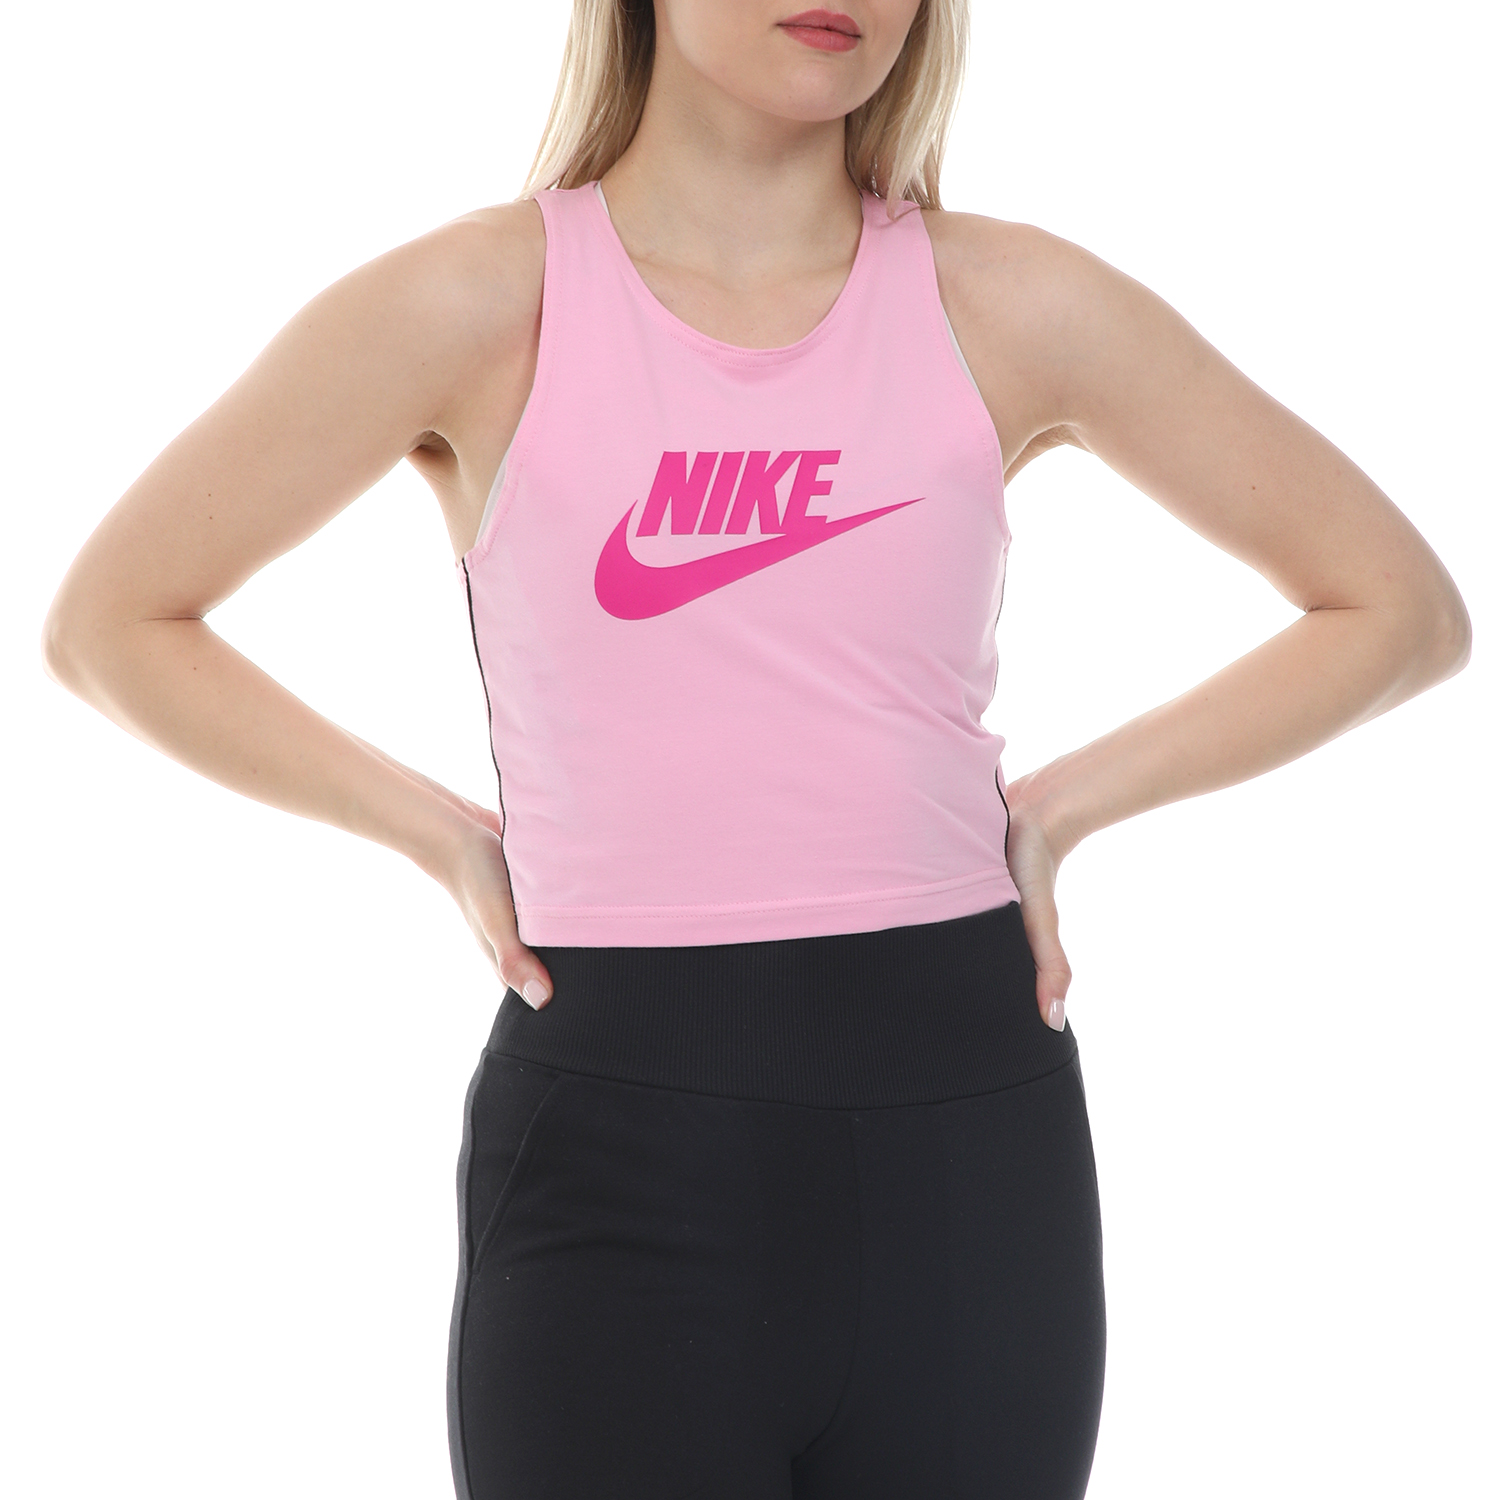 Γυναικεία/Ρούχα/Αθλητικά/T-shirt-Τοπ NIKE - Γυναικείο cropped top NSW HRTG TANK ροζ